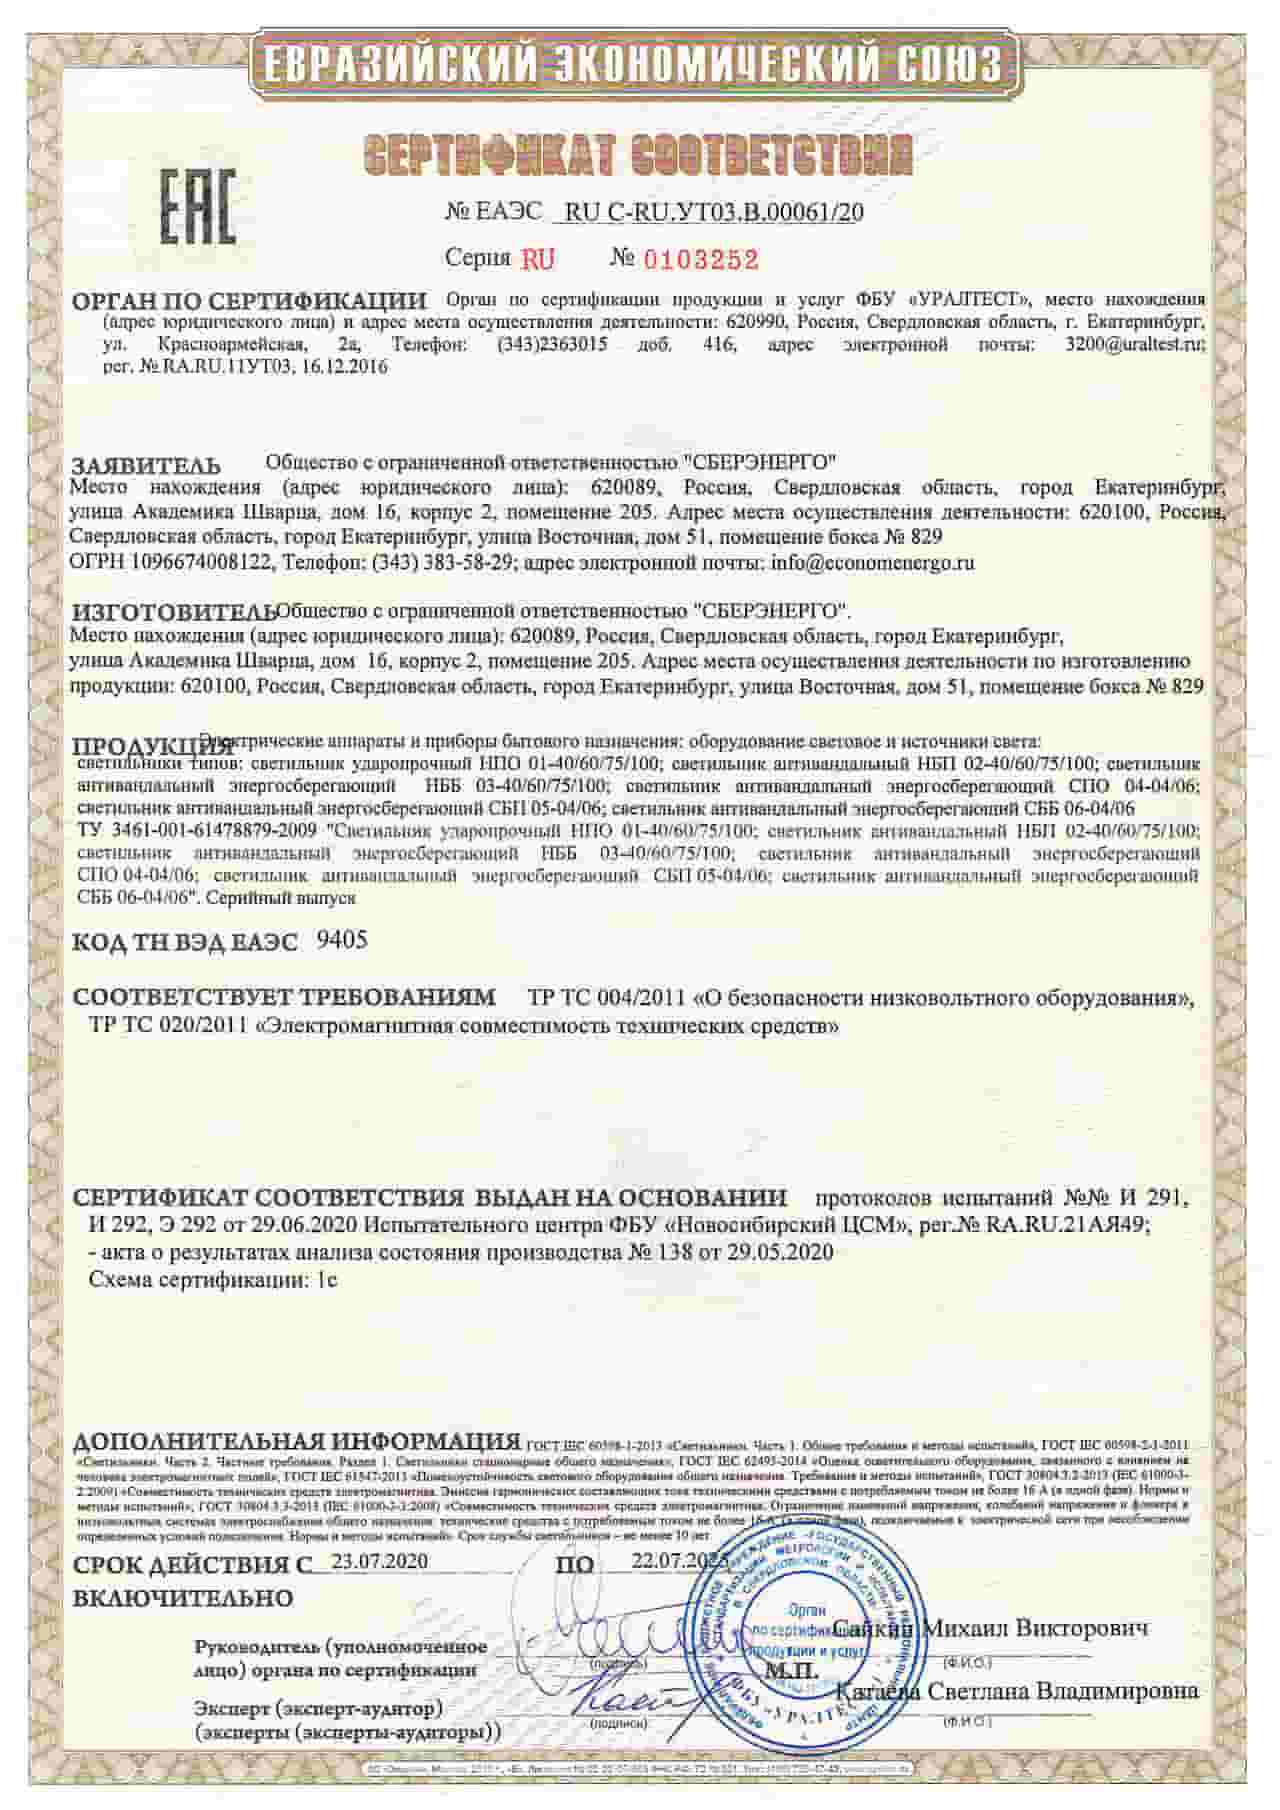 Сертификат светильников производства СБЕРЭНЕРГО